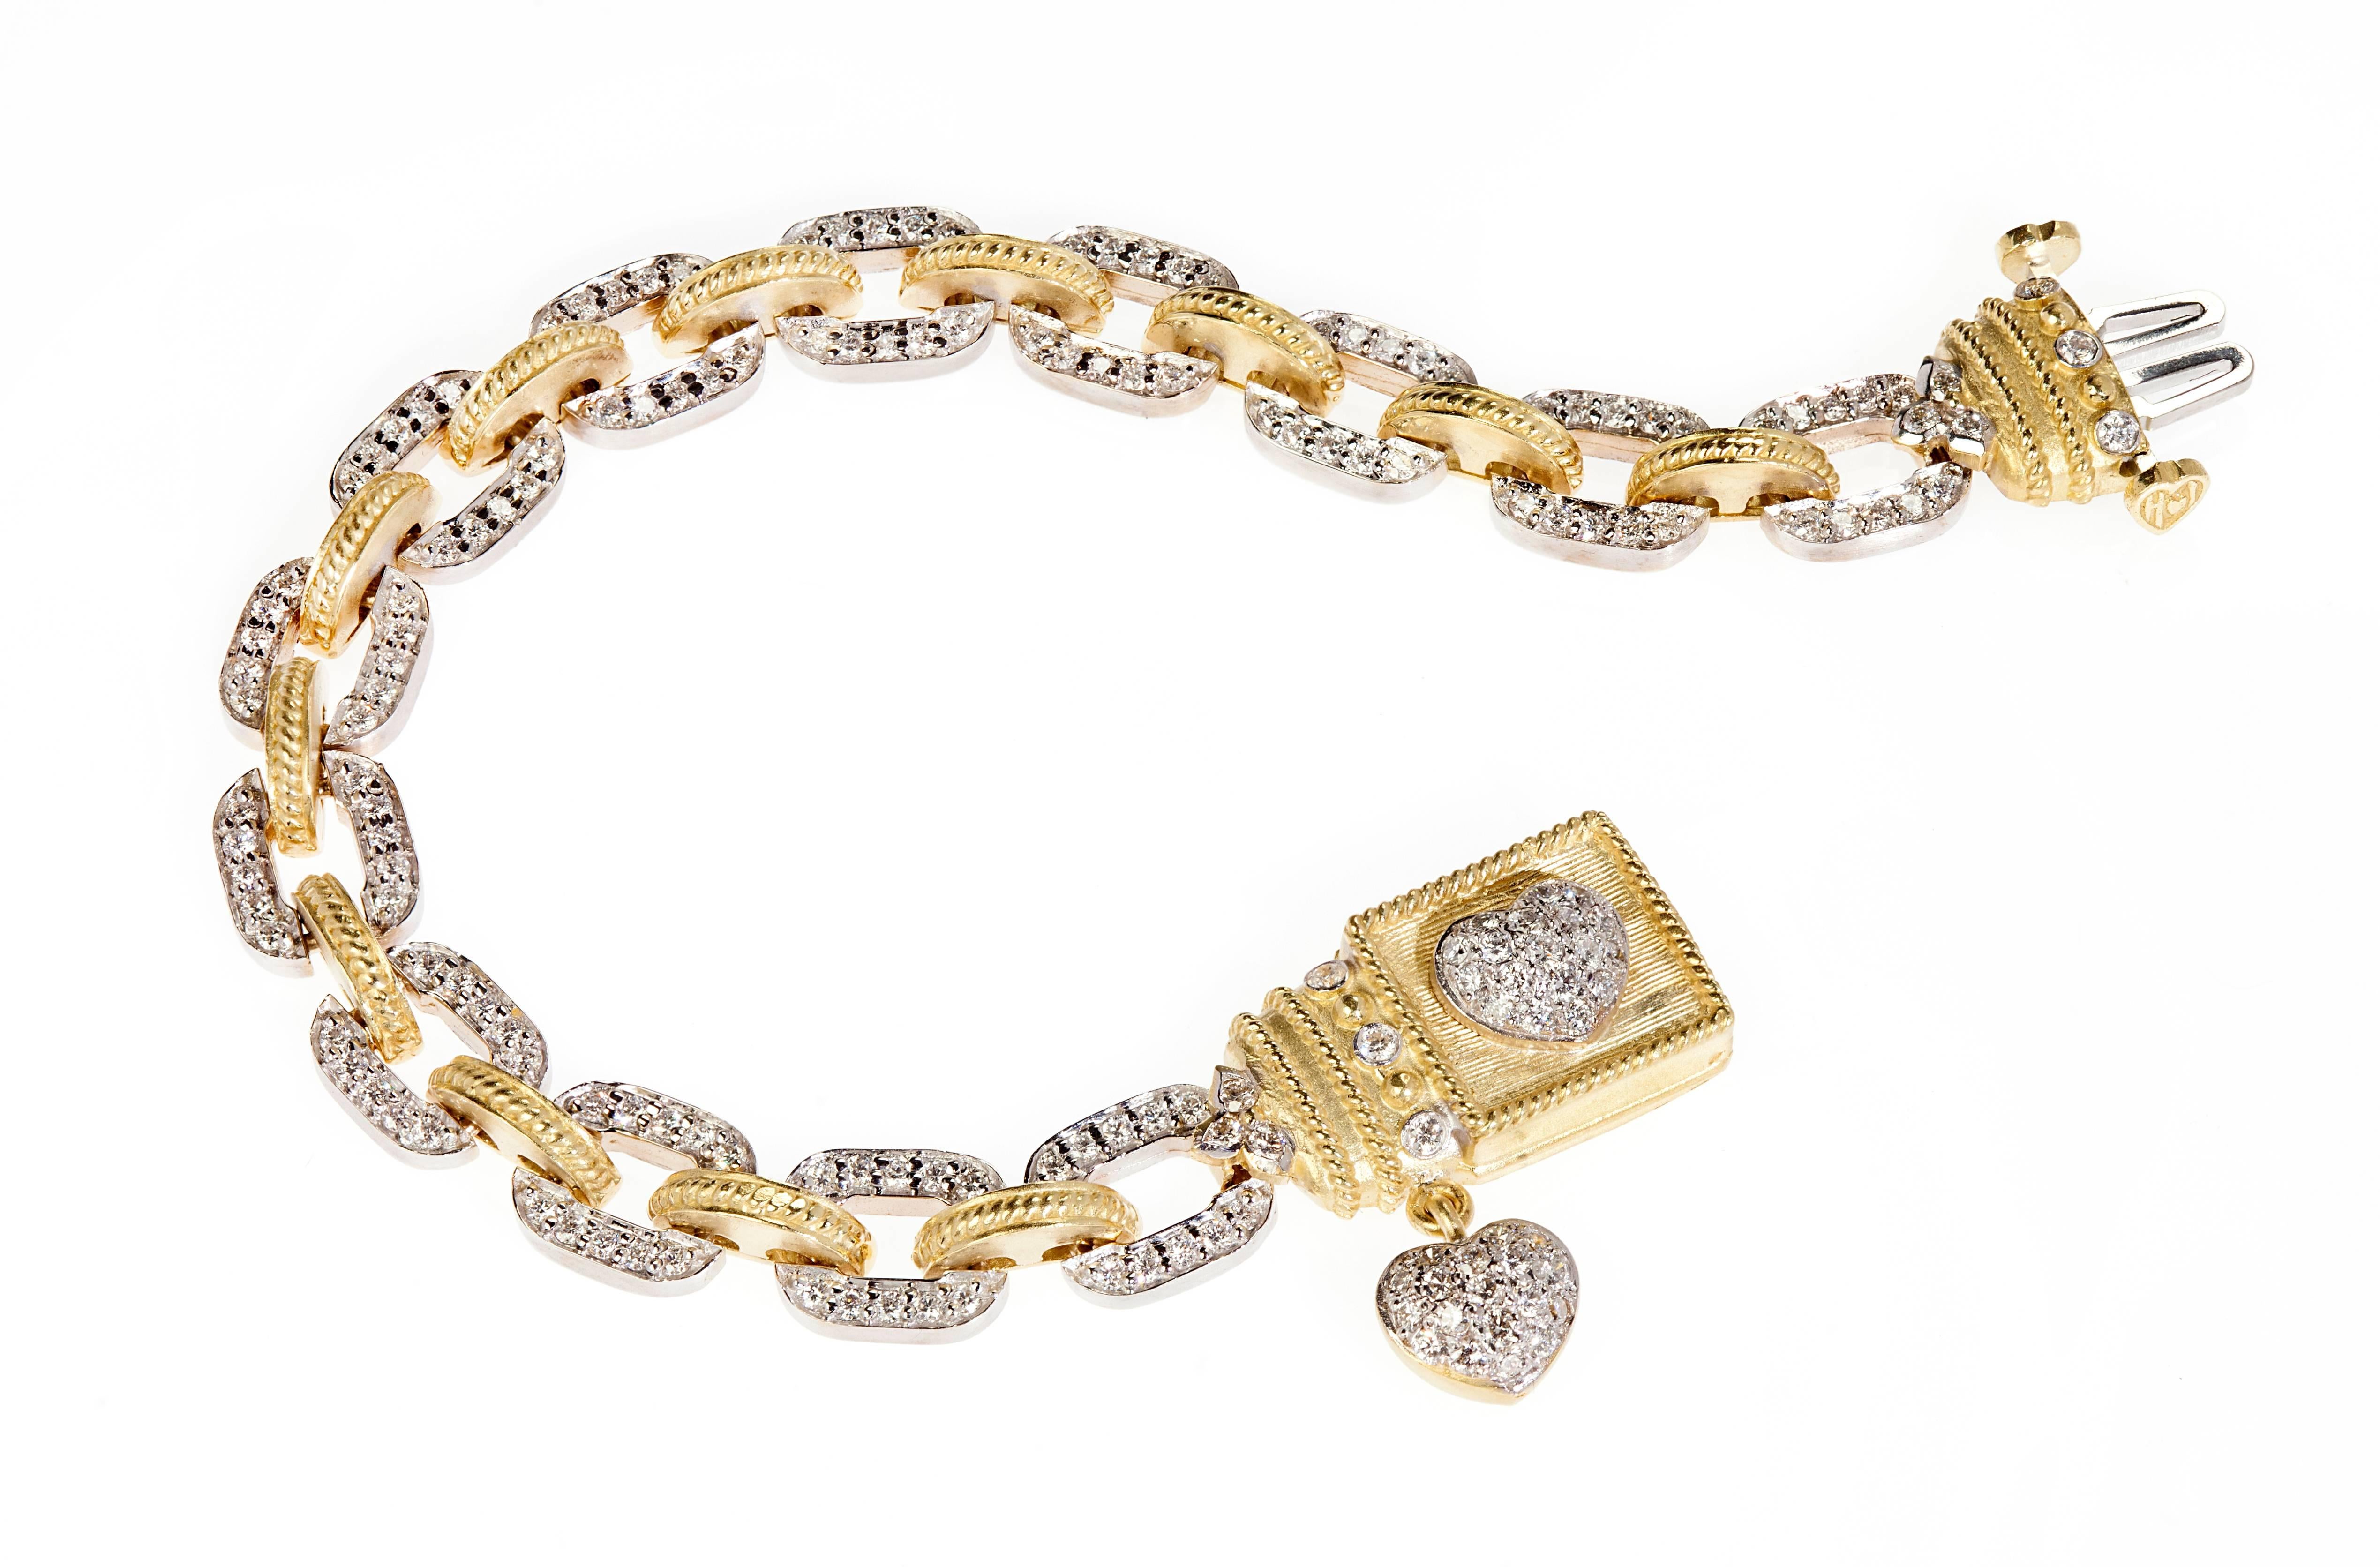 Bracelet Stambolian en or jaune 18 carats à deux tons avec diamants et coeurs

Les maillons du bracelet sont en or blanc et jaune alternés. Les maillons en or blanc sont sertis de diamants sur un côté.

2.30ct. environ Diamants de couleur G et de